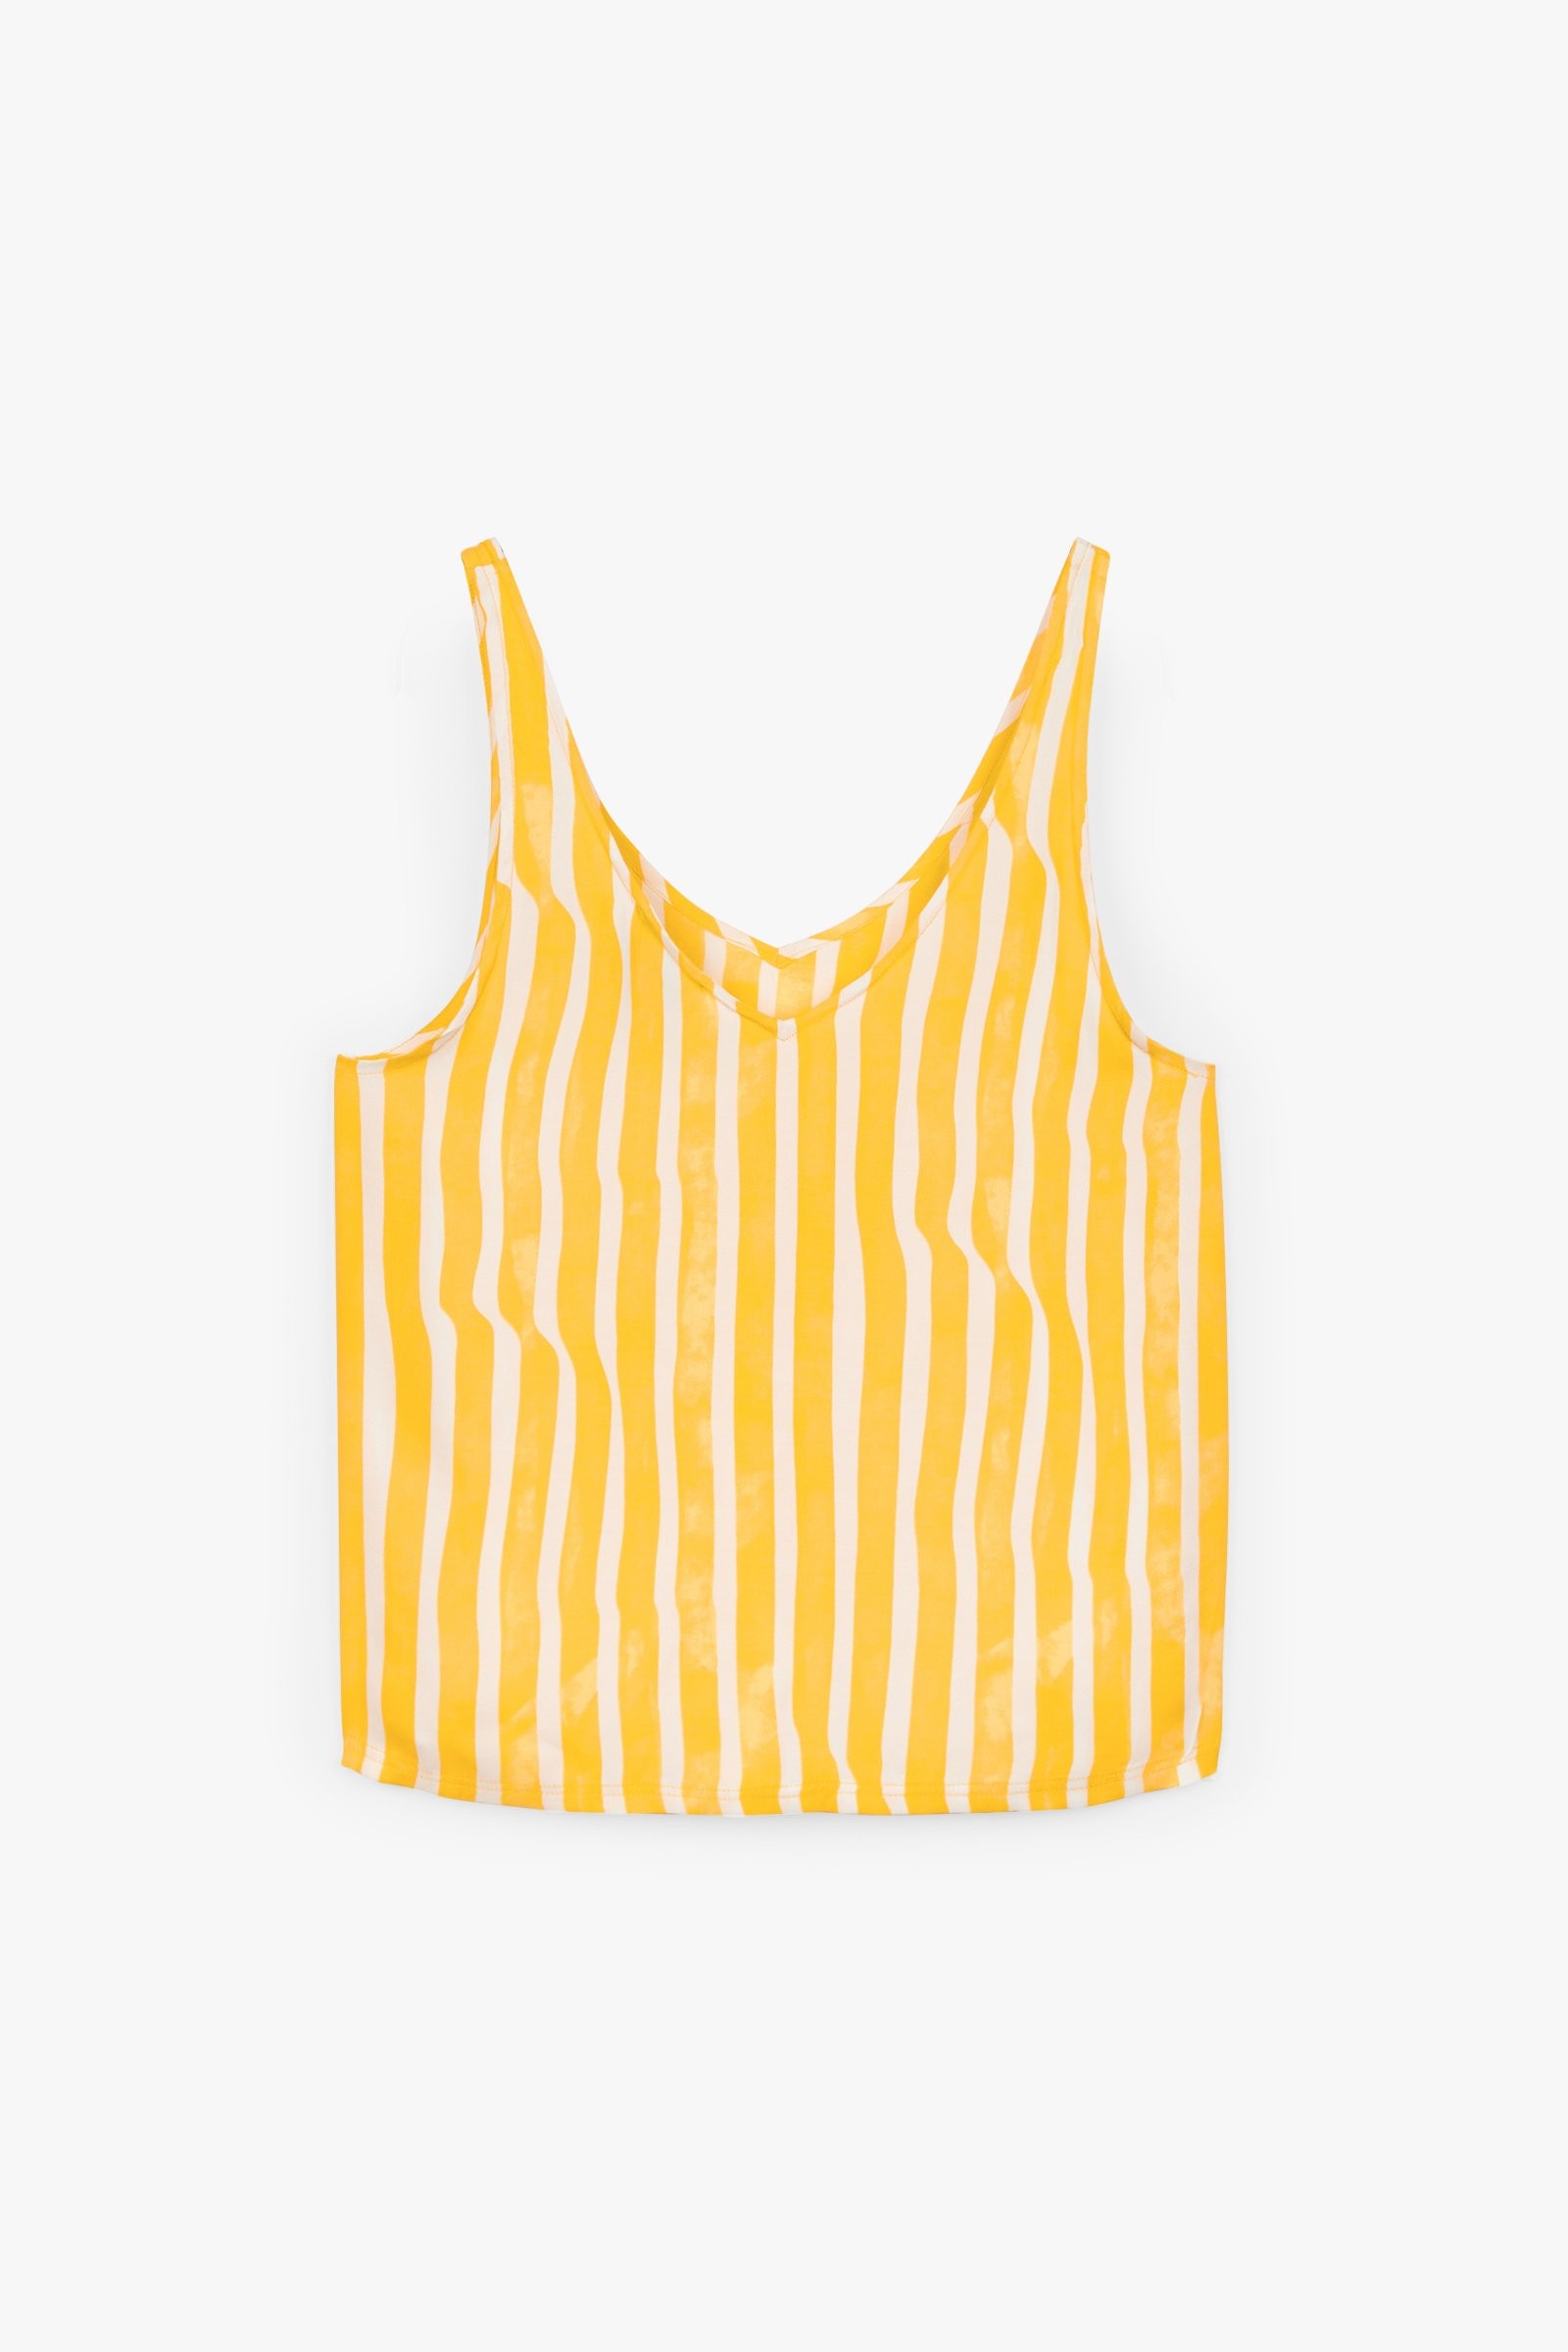 CKS Dames - NUWIKA - blouse mouwloos - geel